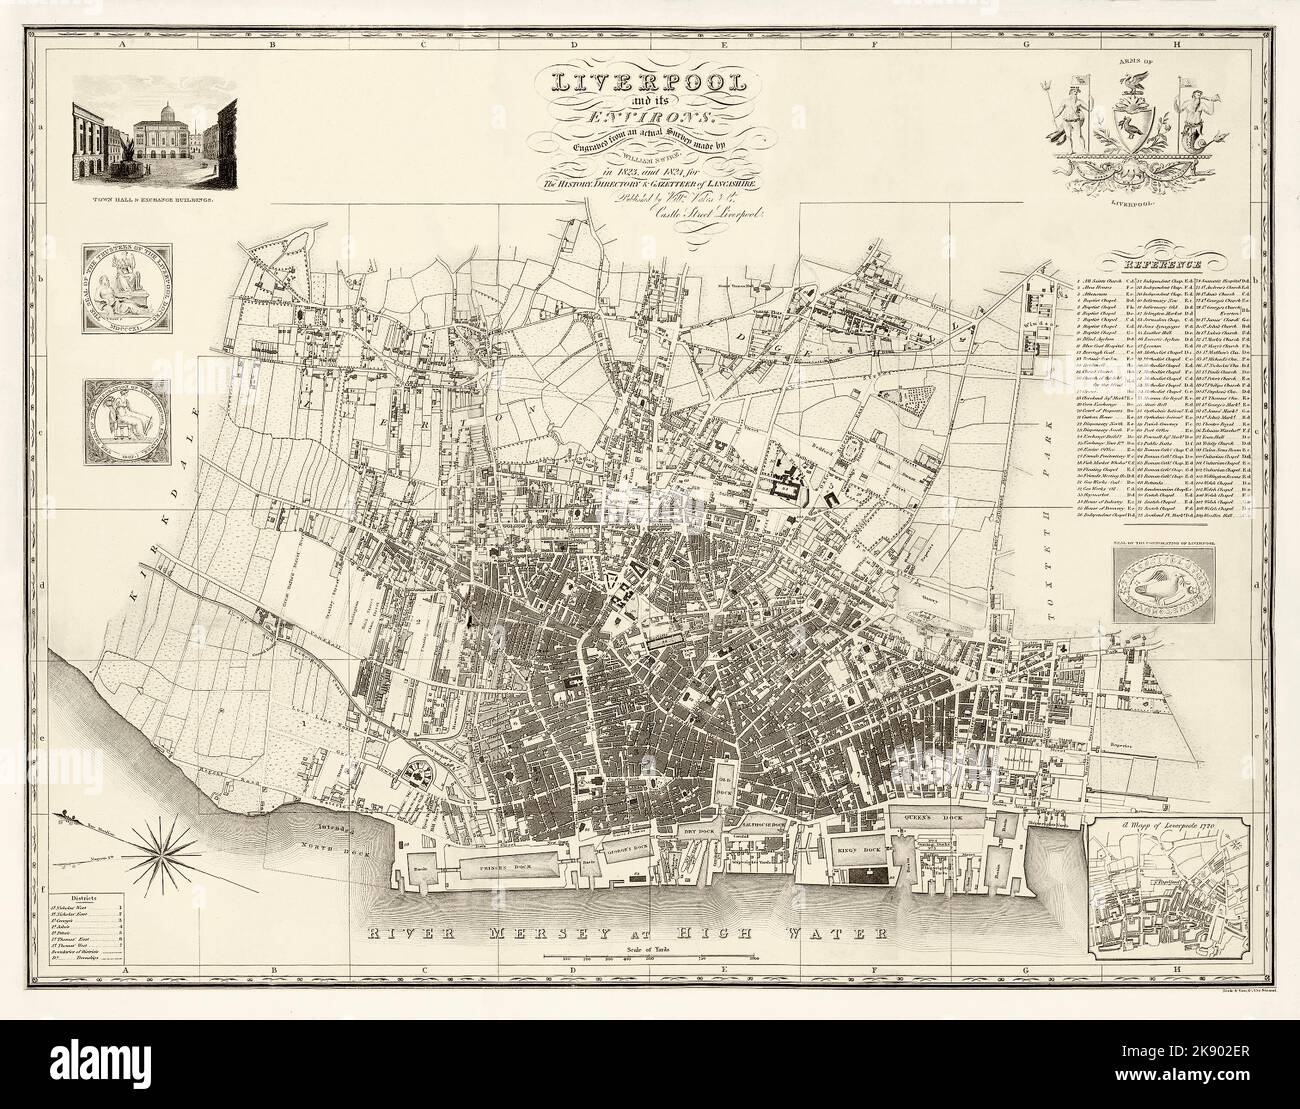 Una mappa di William Swire di Liverpool creata nel 1824 quando la città si è spostata nel 19th ° secolo, con una lista di quartieri e punti di riferimento. Le banchine si estendono da Queens Dock a sud fino al North Dock, che divenne Waterloo Dock nel 1834. Everton era un villaggio di grandi case e giardini per ricchi commercianti e industriali, aria pulita e vista sul fiume. La mappa include lo stemma della Corporation of Liverpool con una raffigurazione dell'uccello epatico. In basso a destra è raffigurante un ‘Mapp di Leverpoole 1720’, che illustra la città quasi esattamente un secolo prima. Foto Stock